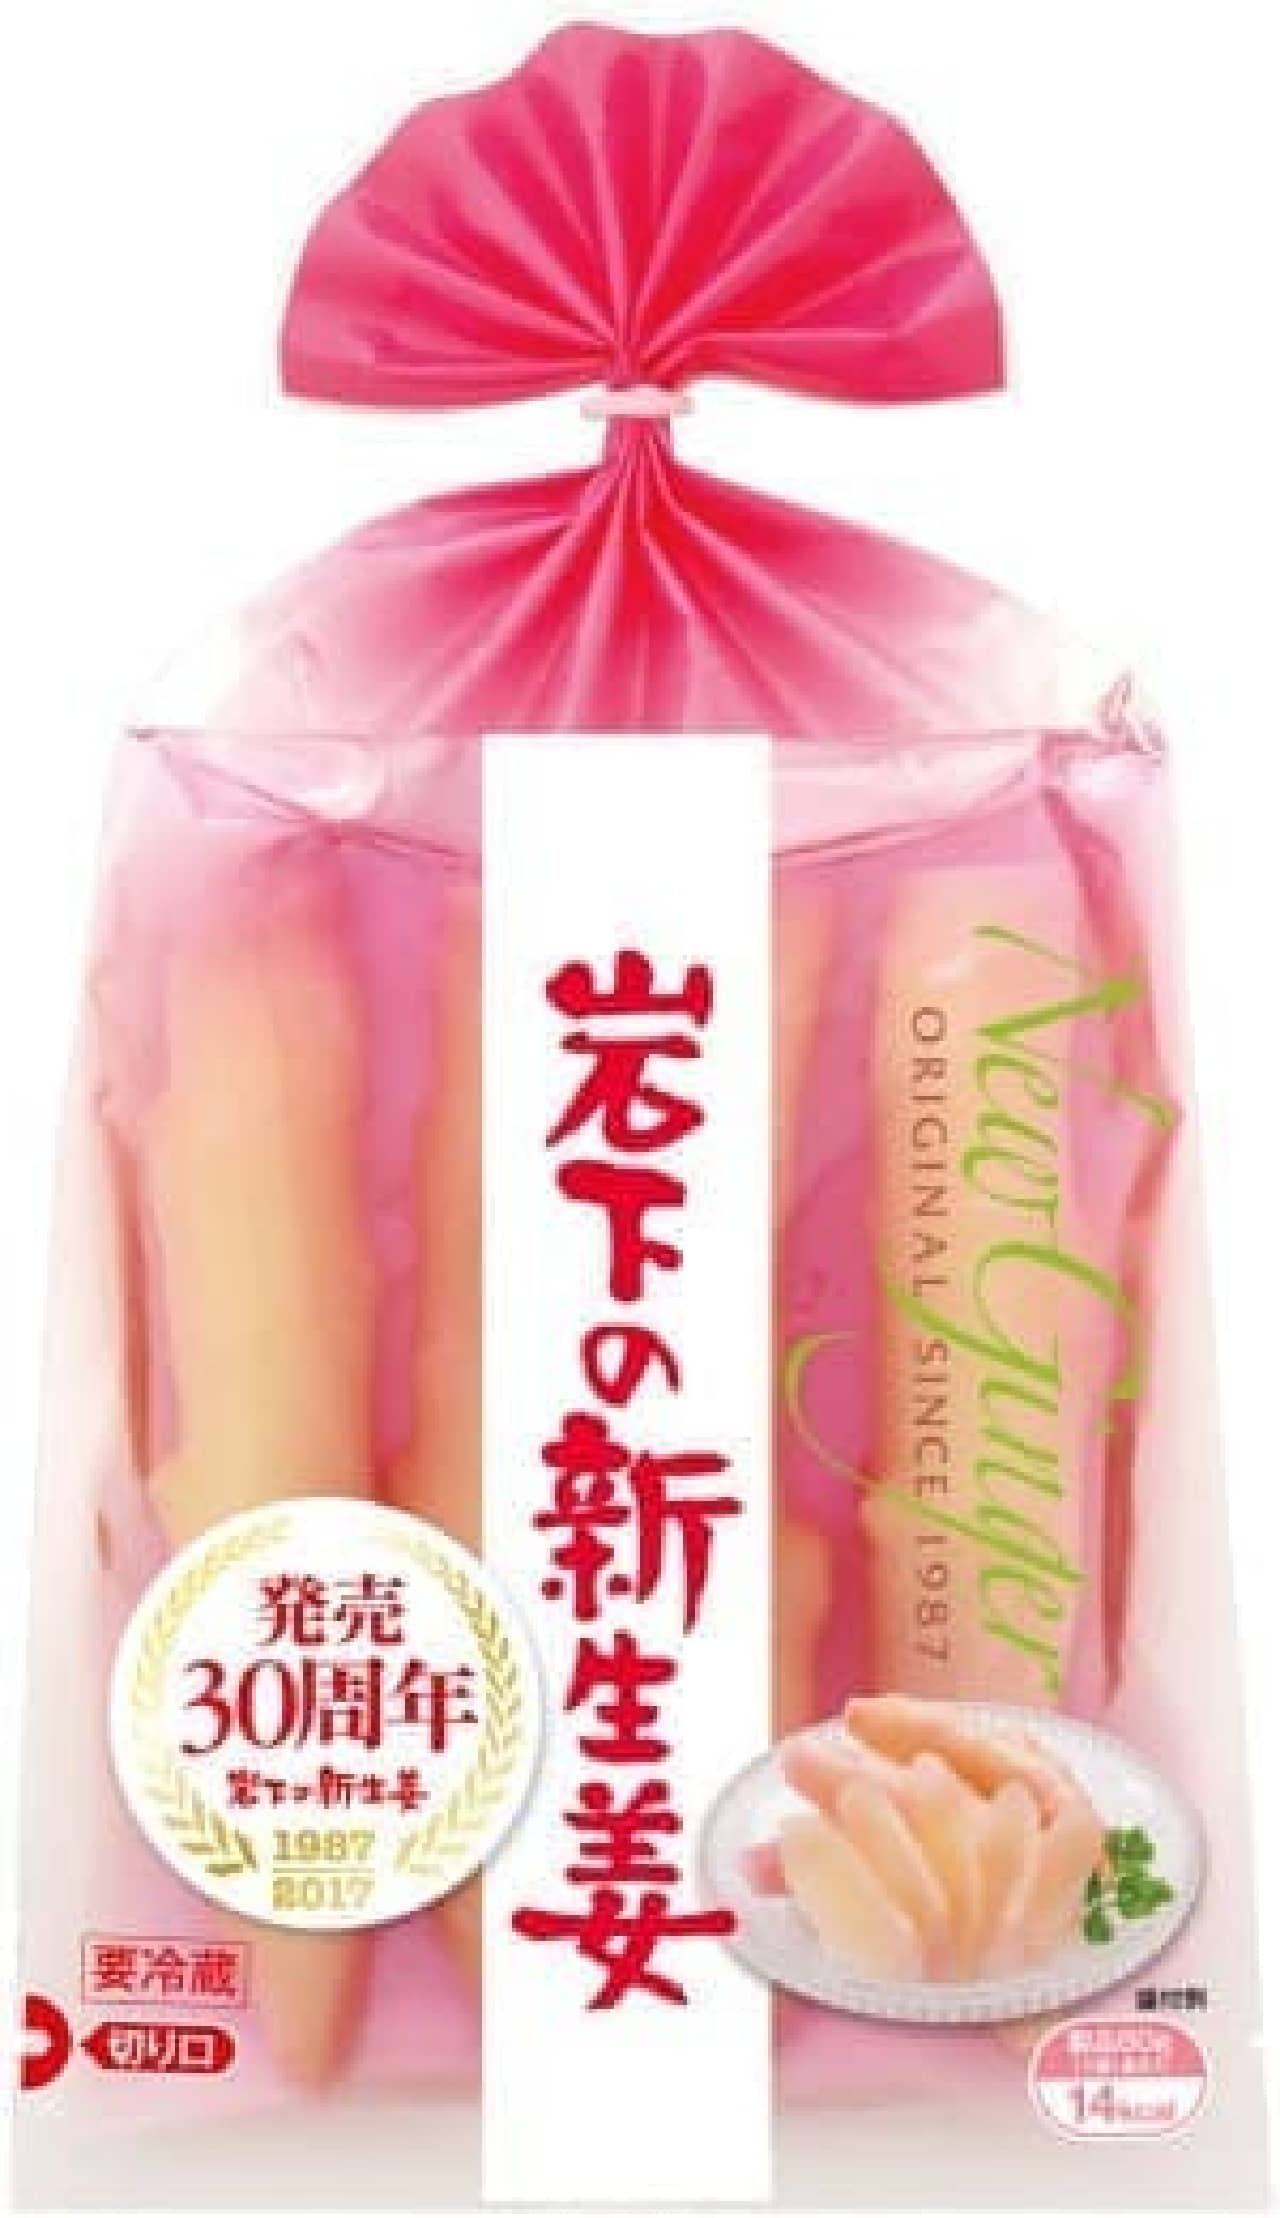 Iwashita Foods "Iwashita New Ginger"